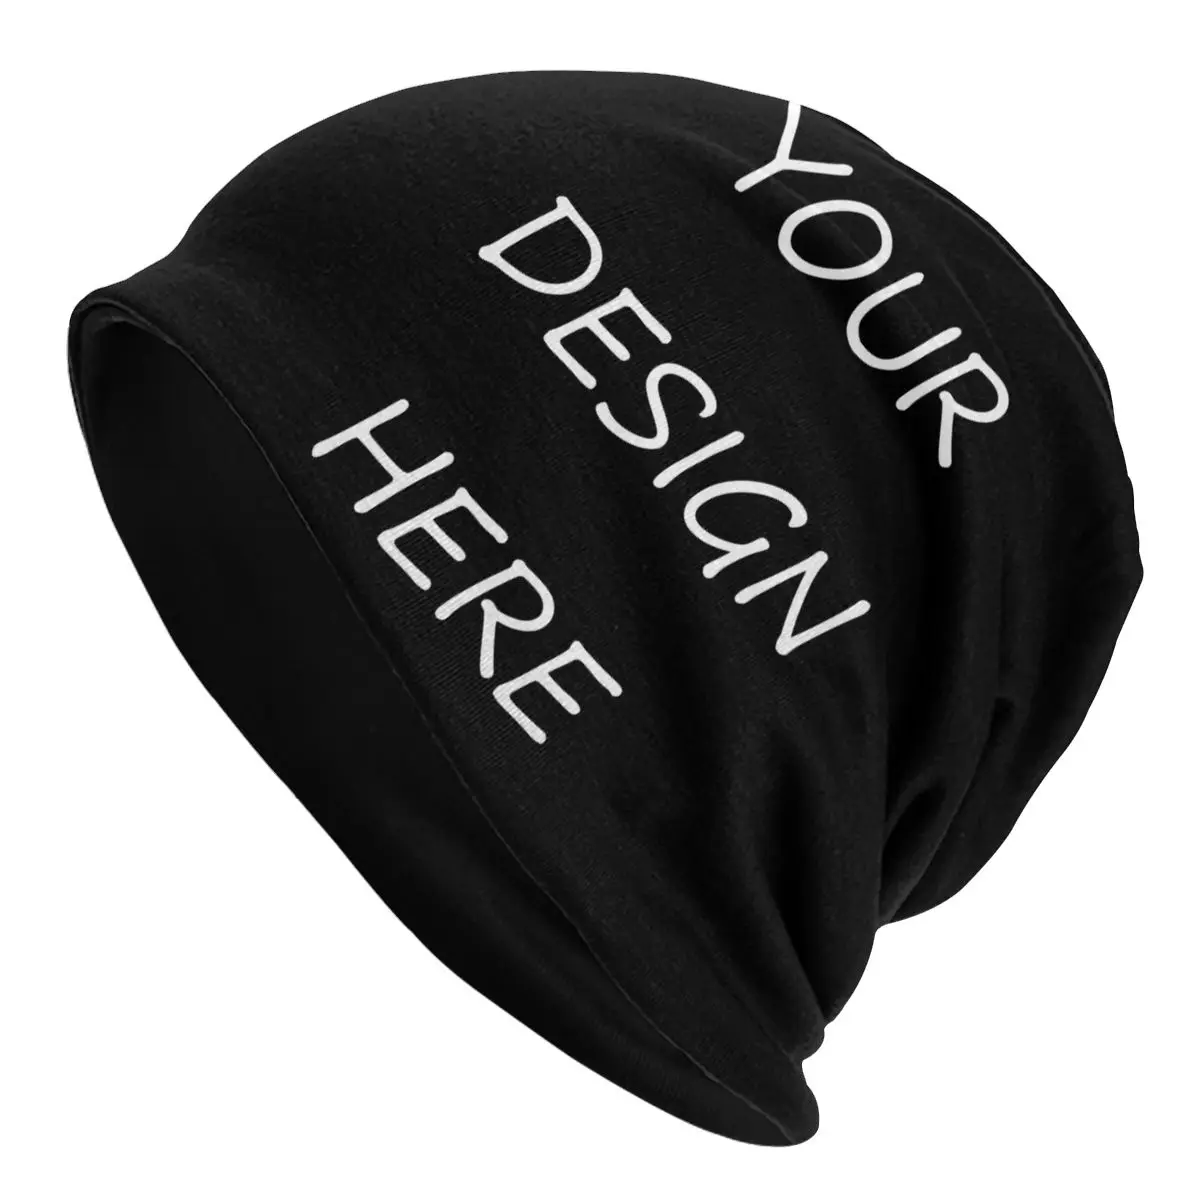 

Зимняя теплая вязаная шапка для мужчин и женщин, шапочки для взрослых с вашим фото логотипом и текстовым принтом, шапочки, шапки, ваш дизайн здесь, «сделай сам», шапки